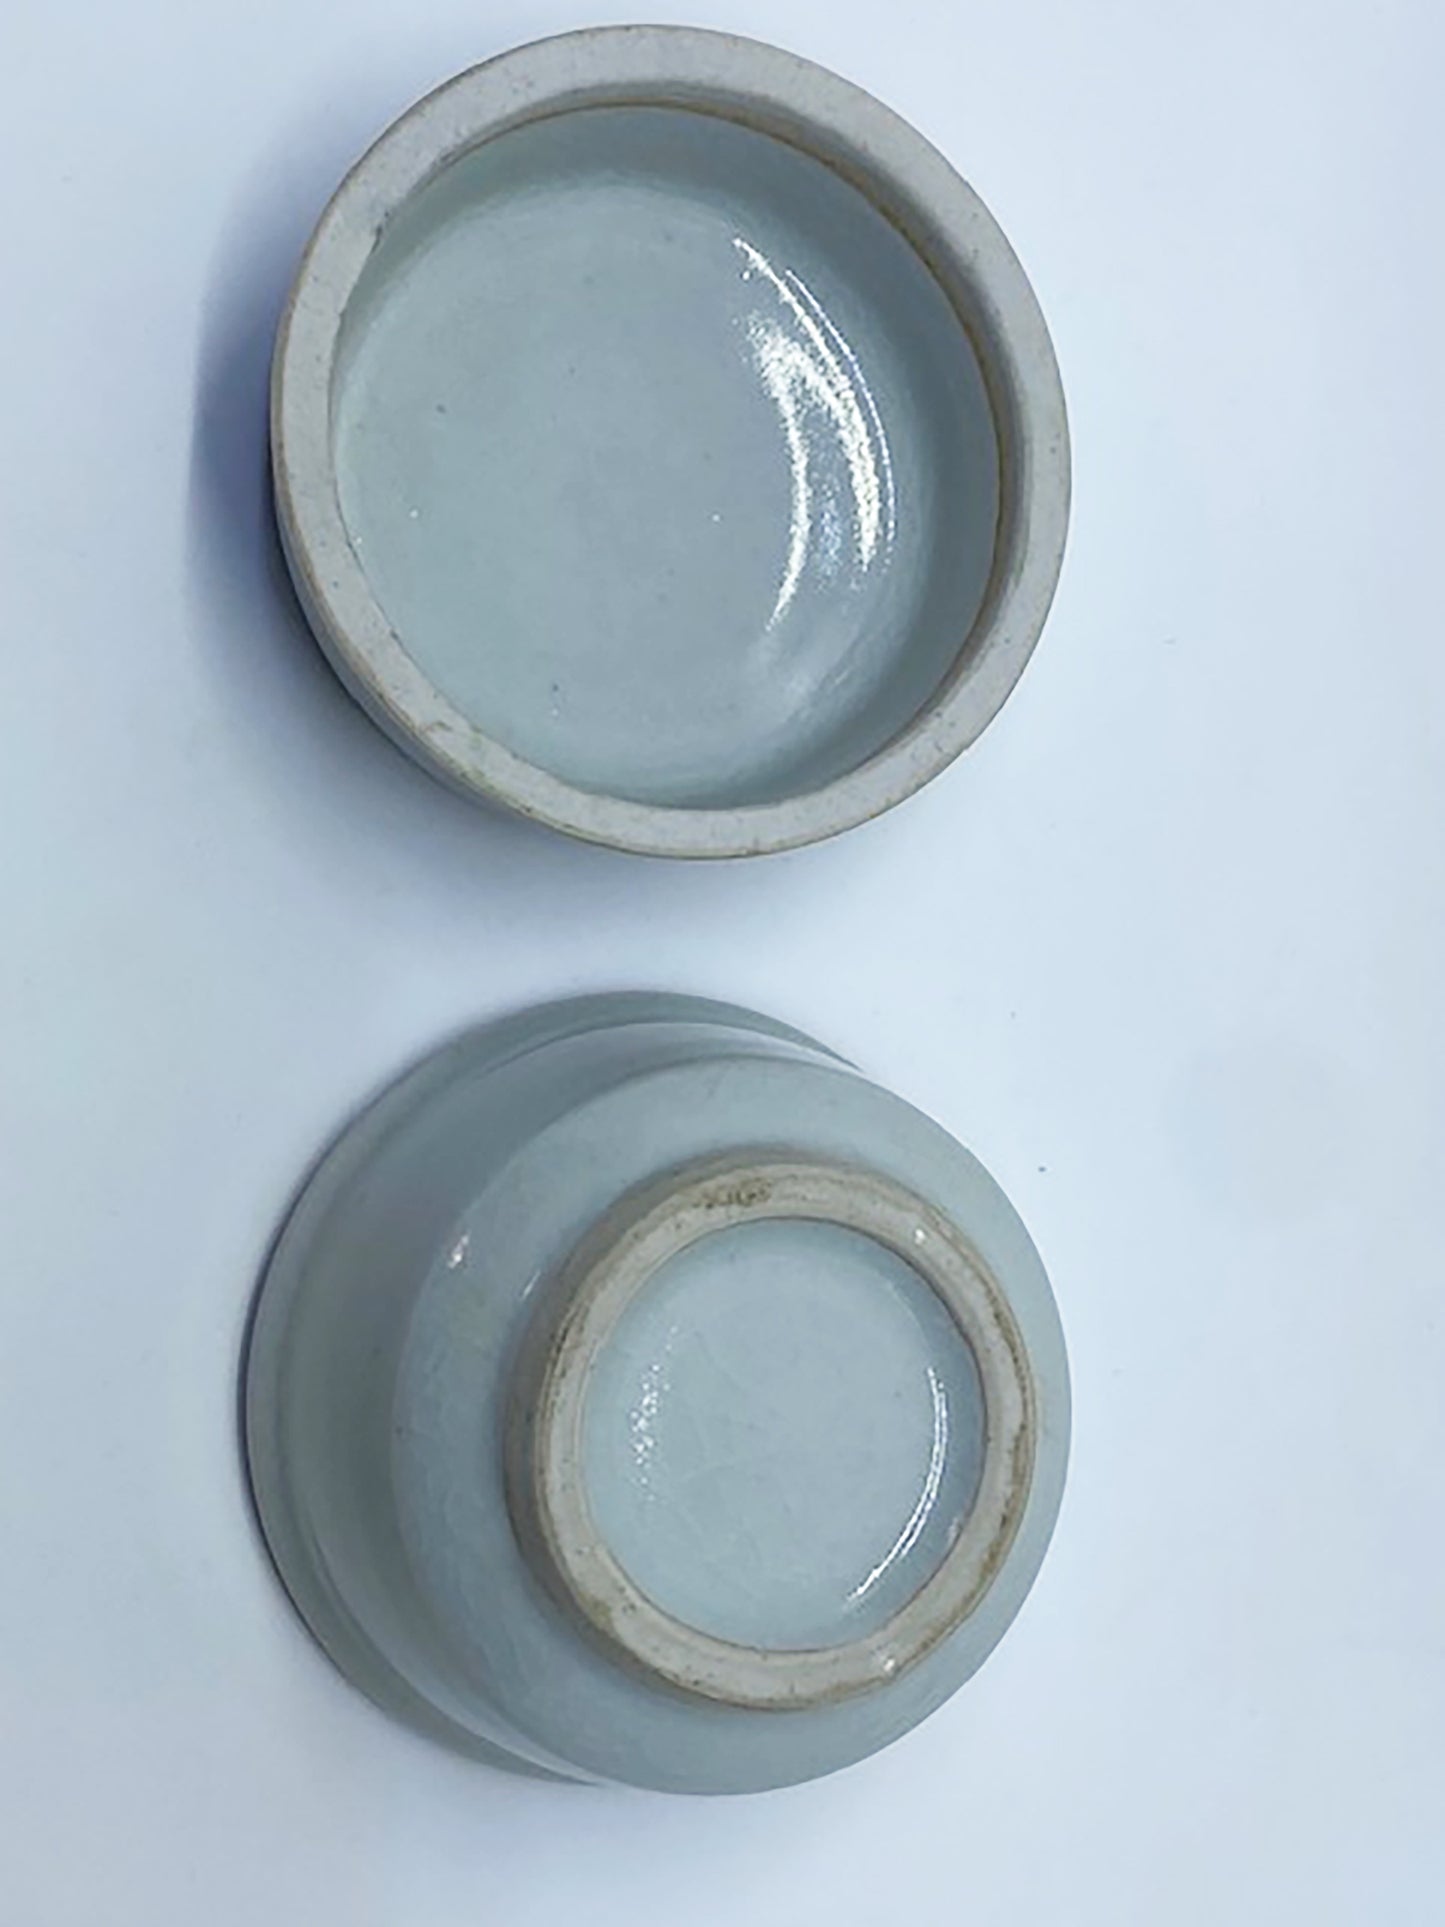 Les Blakebrough ceramic trinket container